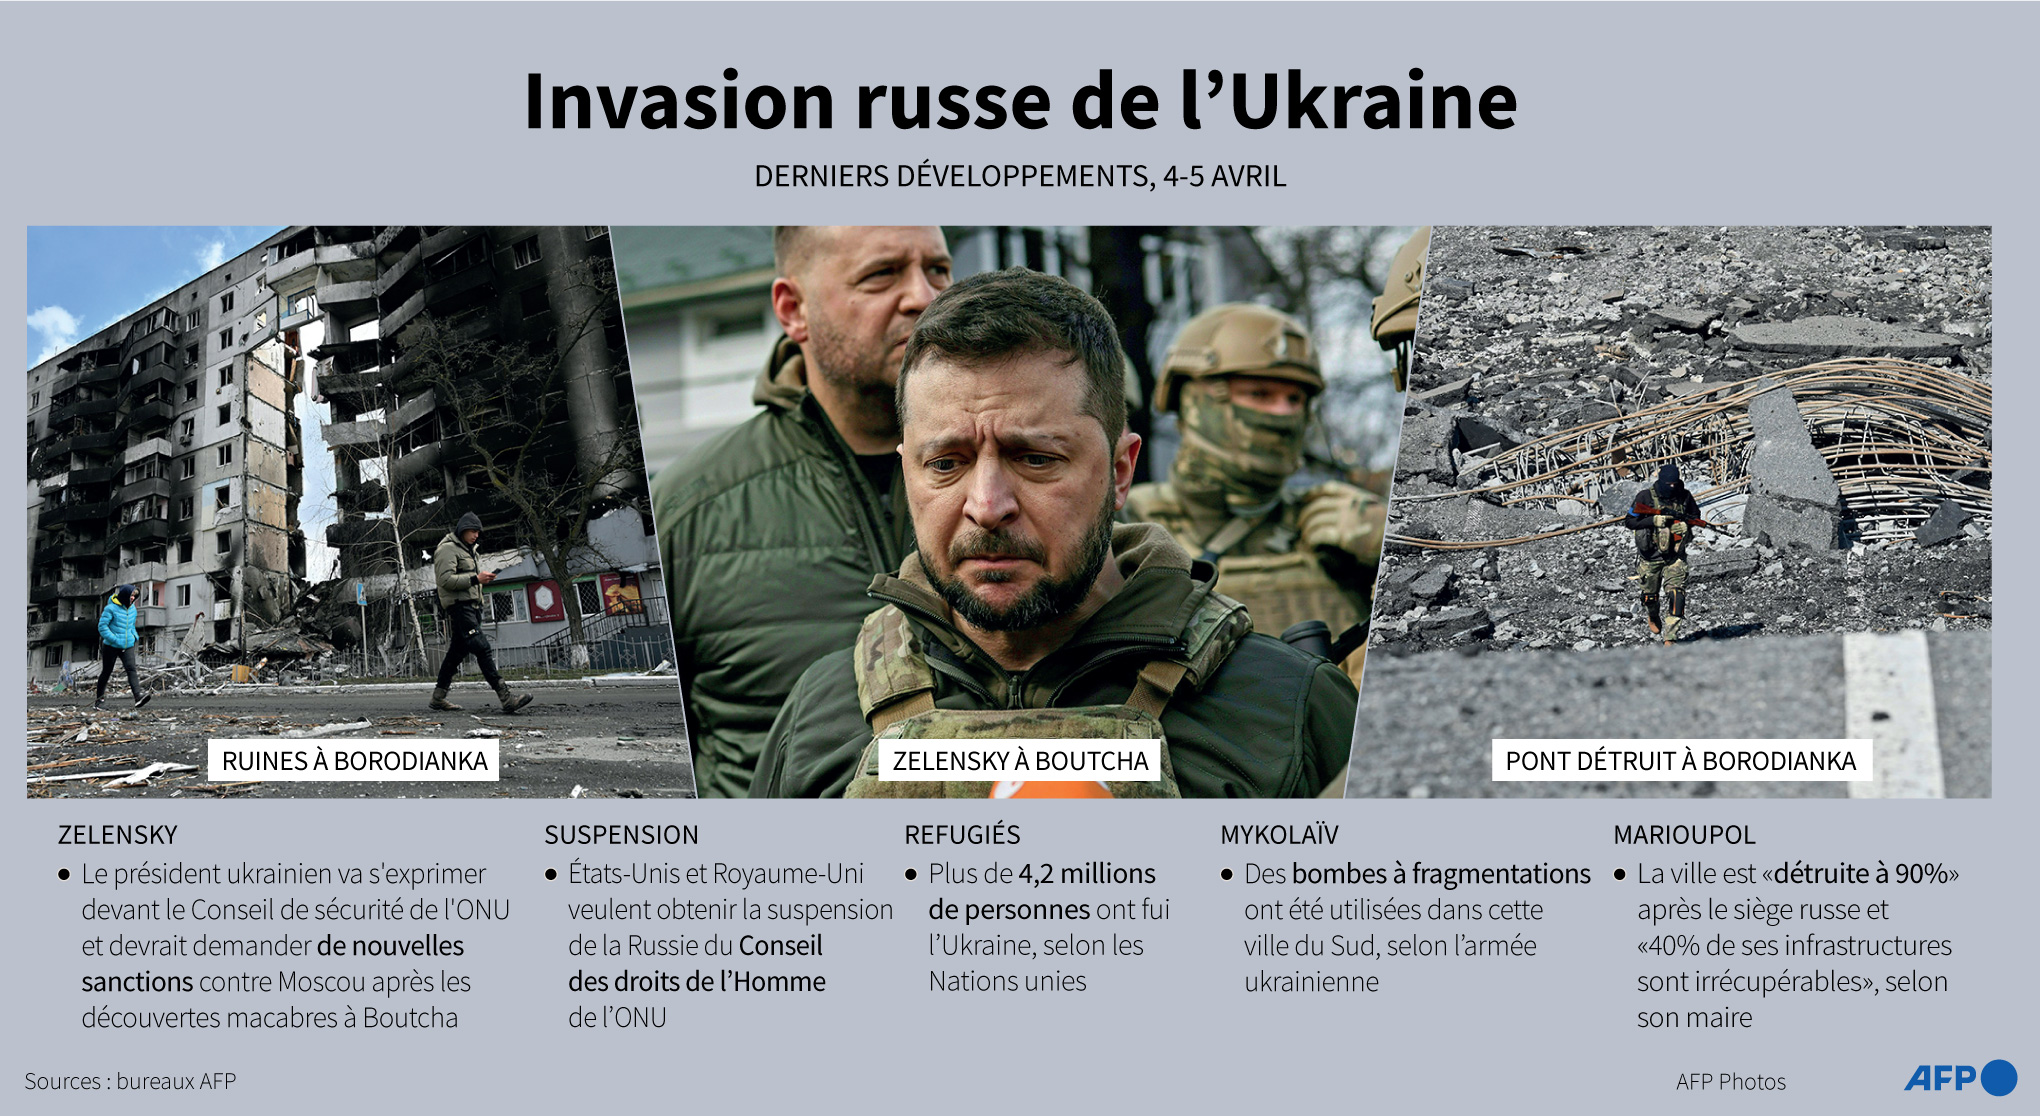 Gli ultimi sviluppi dell'invasione russa dell'Ucraina, con foto